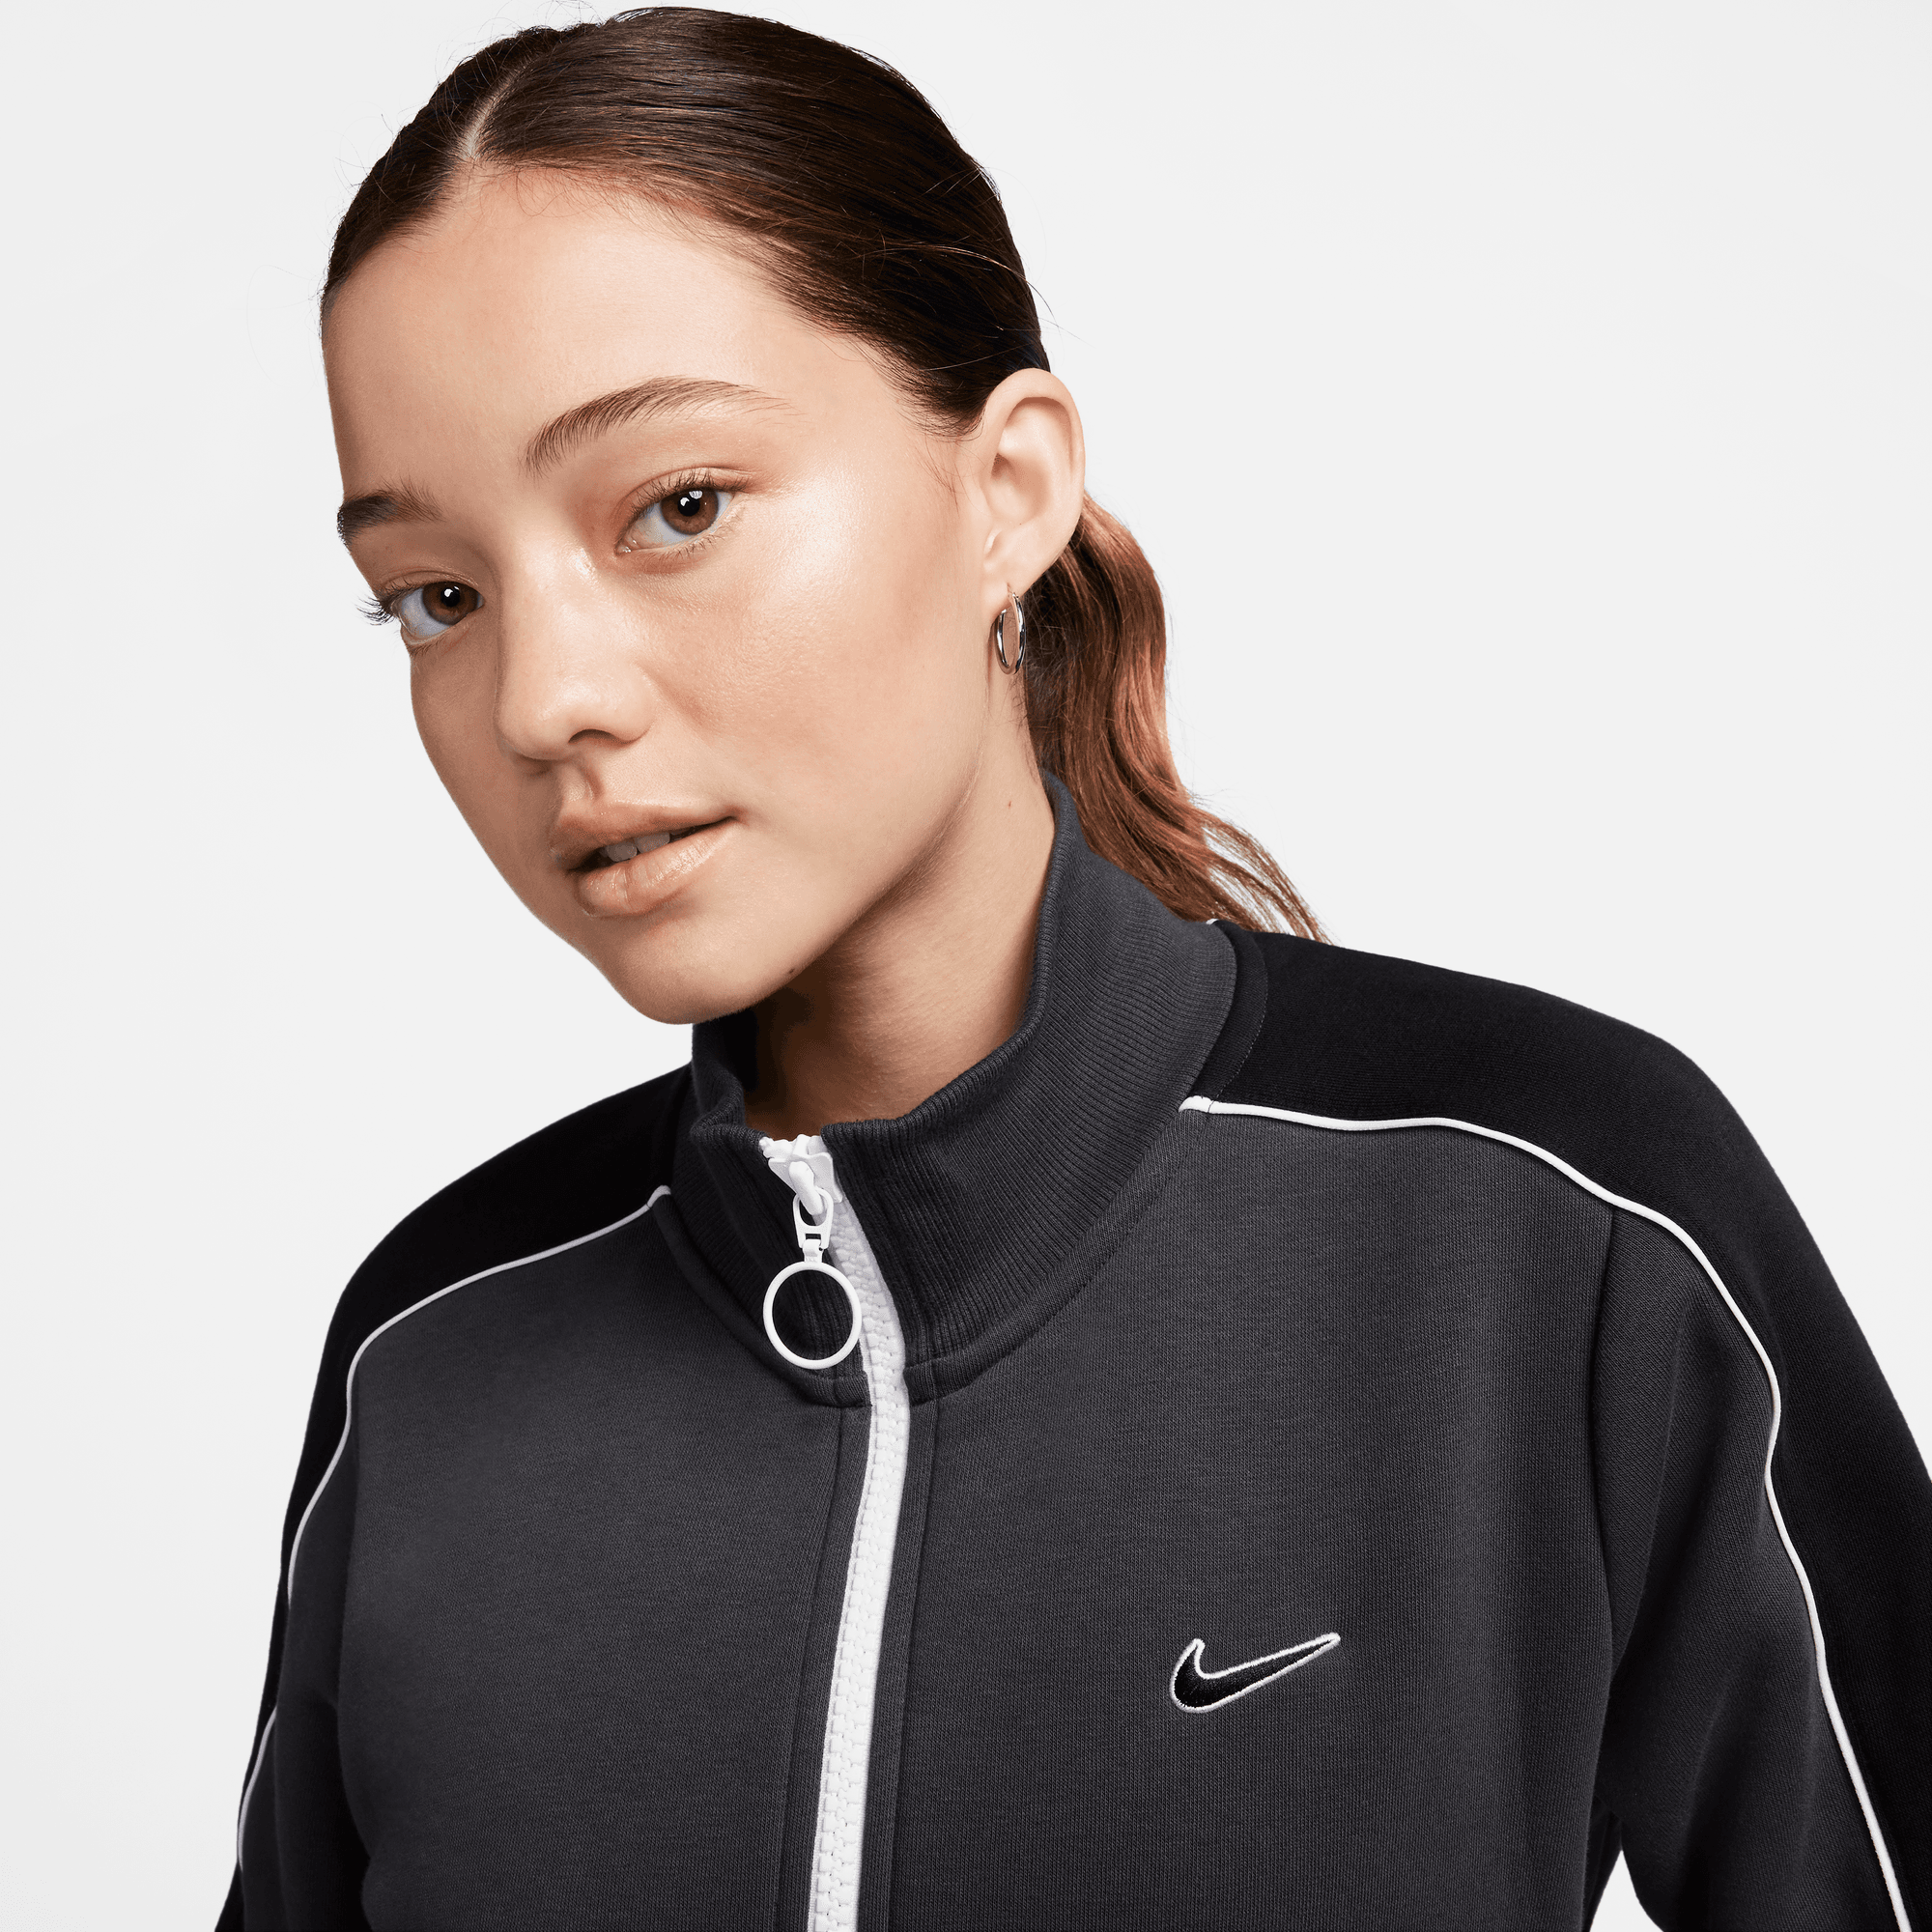 Nike Sportswear Women's Anthracite Grey Fleece Track Top